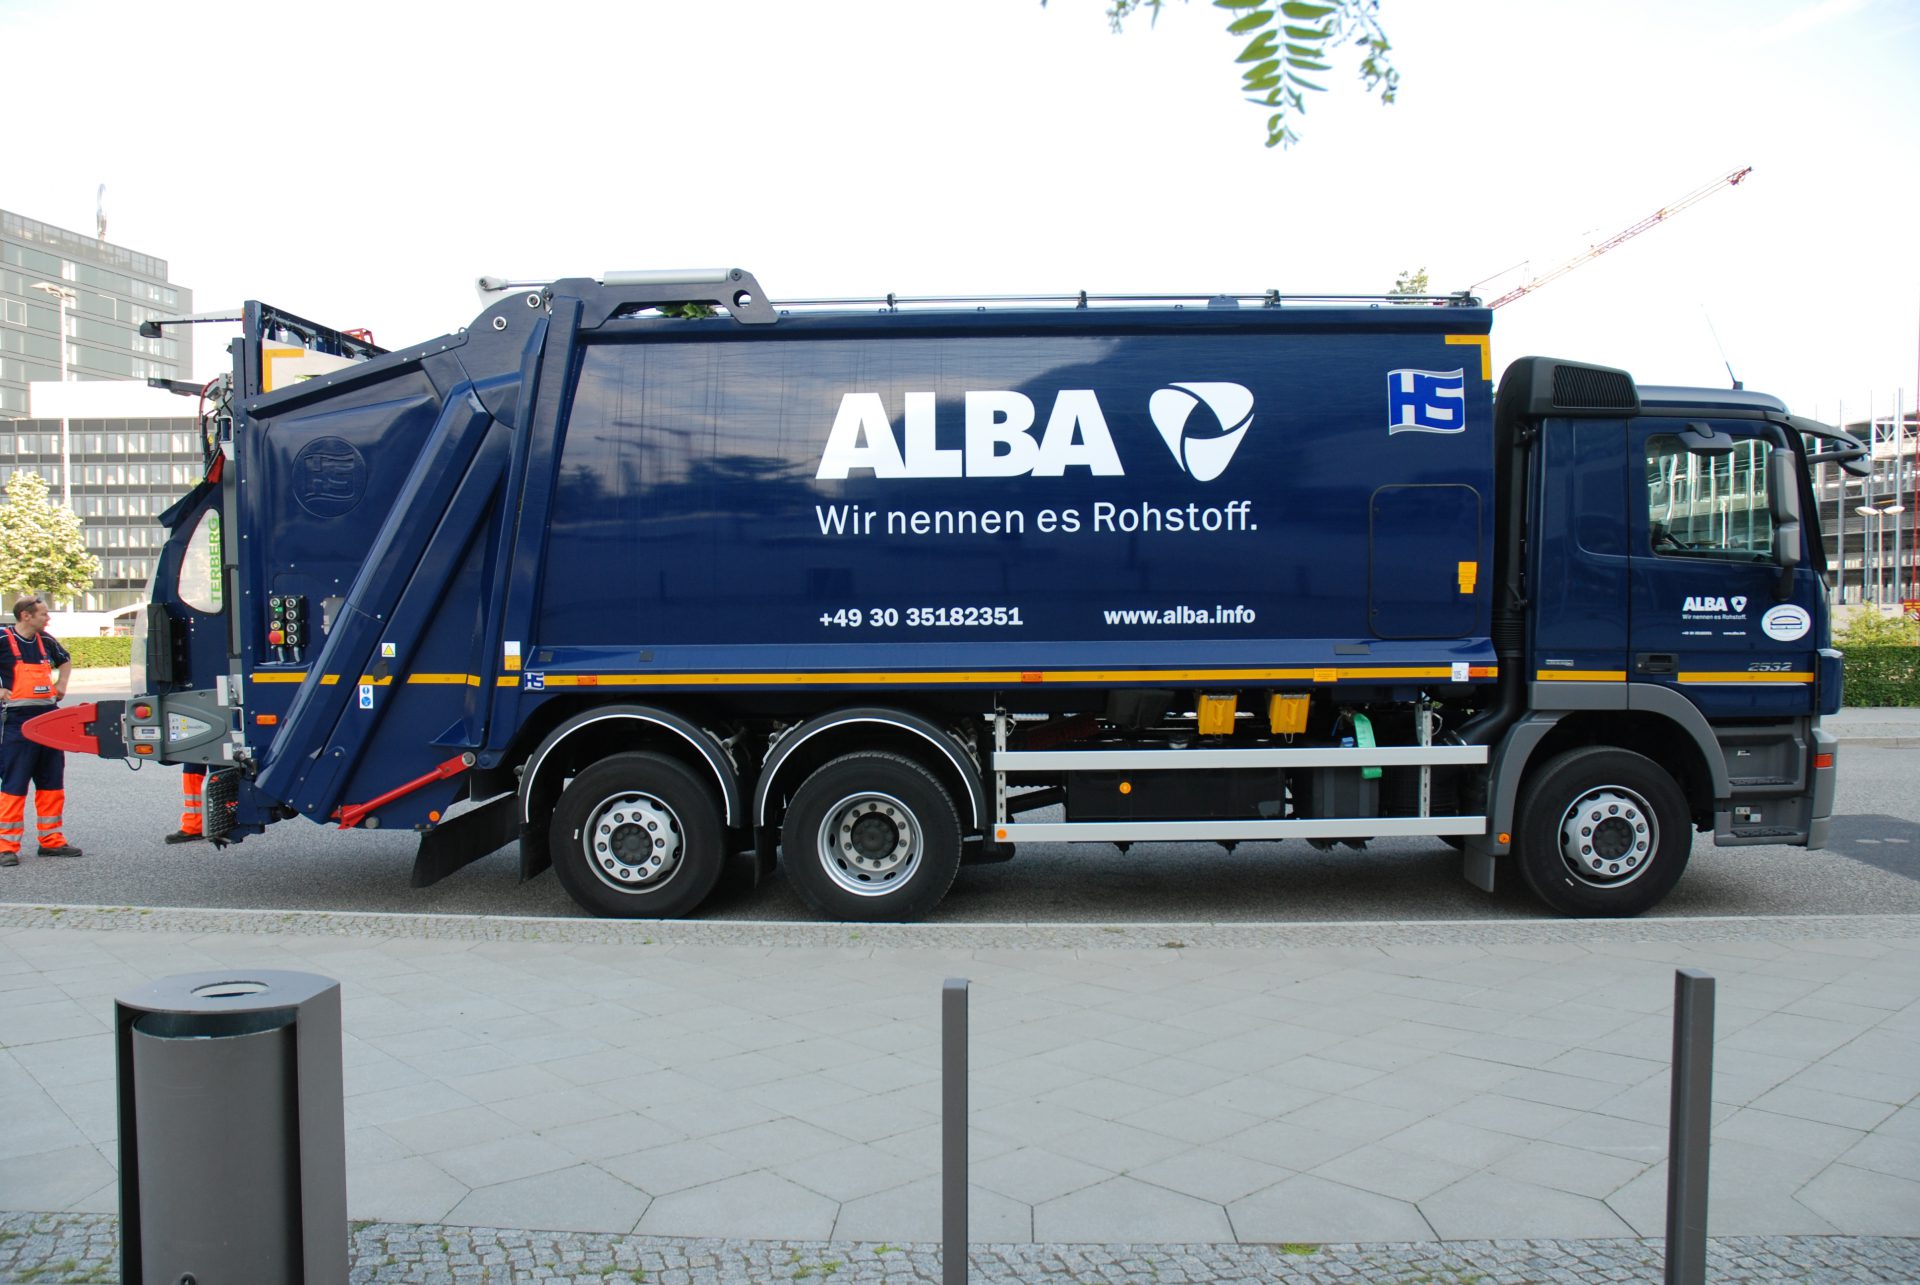 Alba Corporate Design Brand Identity Logo von Realgestalt auf LKW